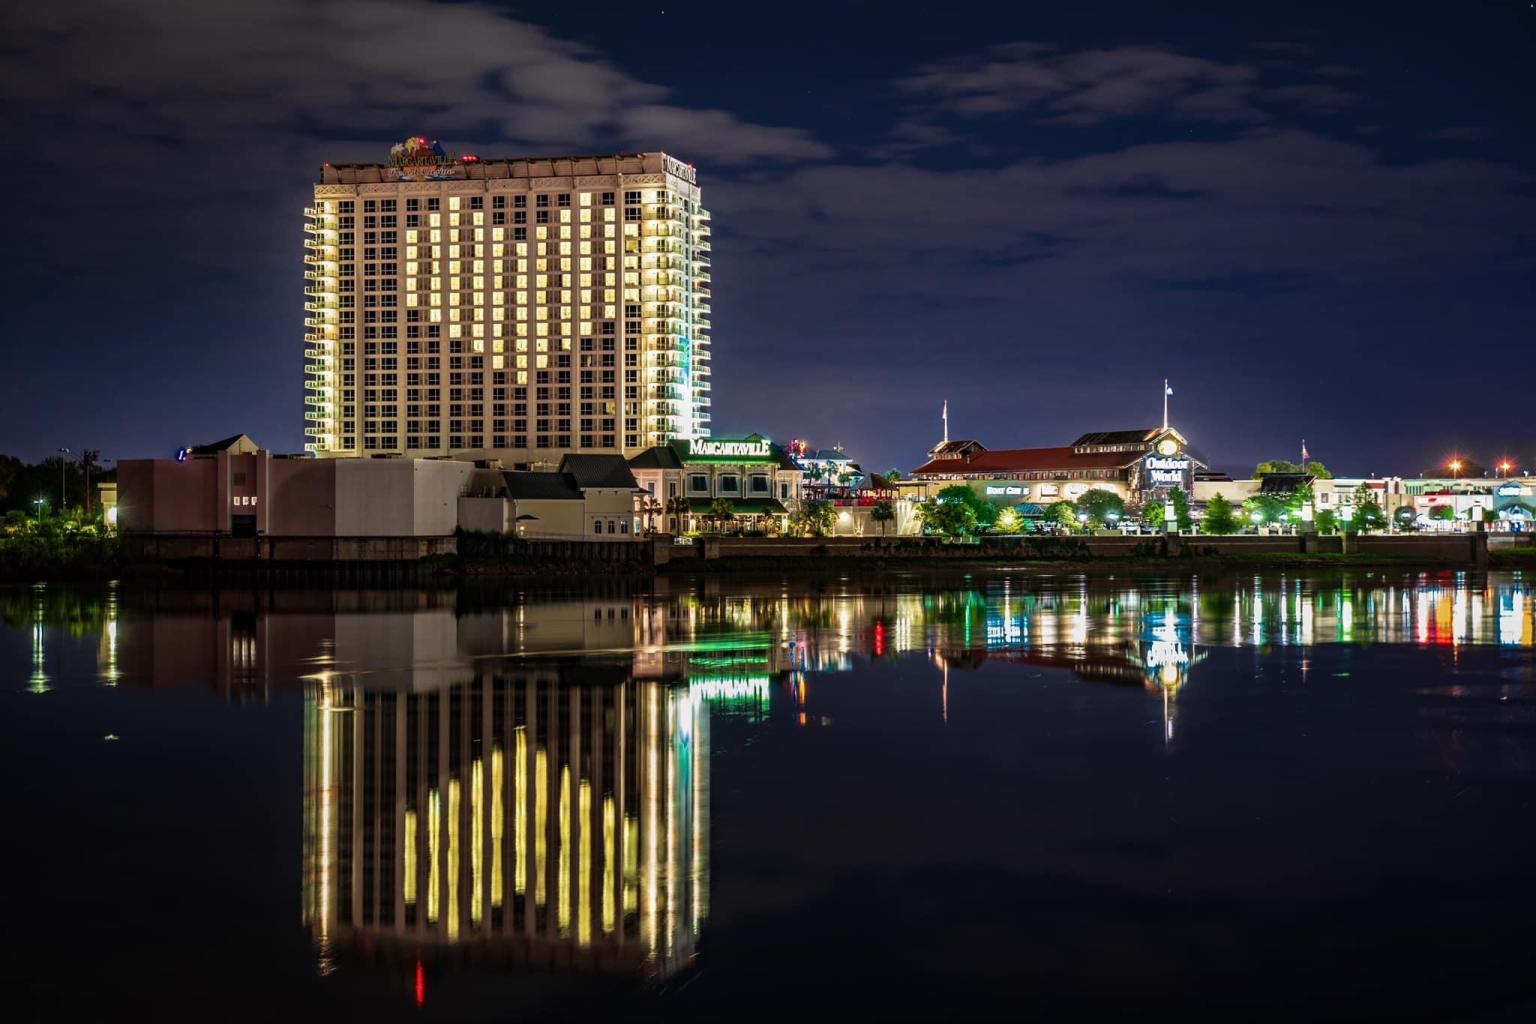 casinos, restaurants and retail shops in Shreveport-Bossier are preparing t...